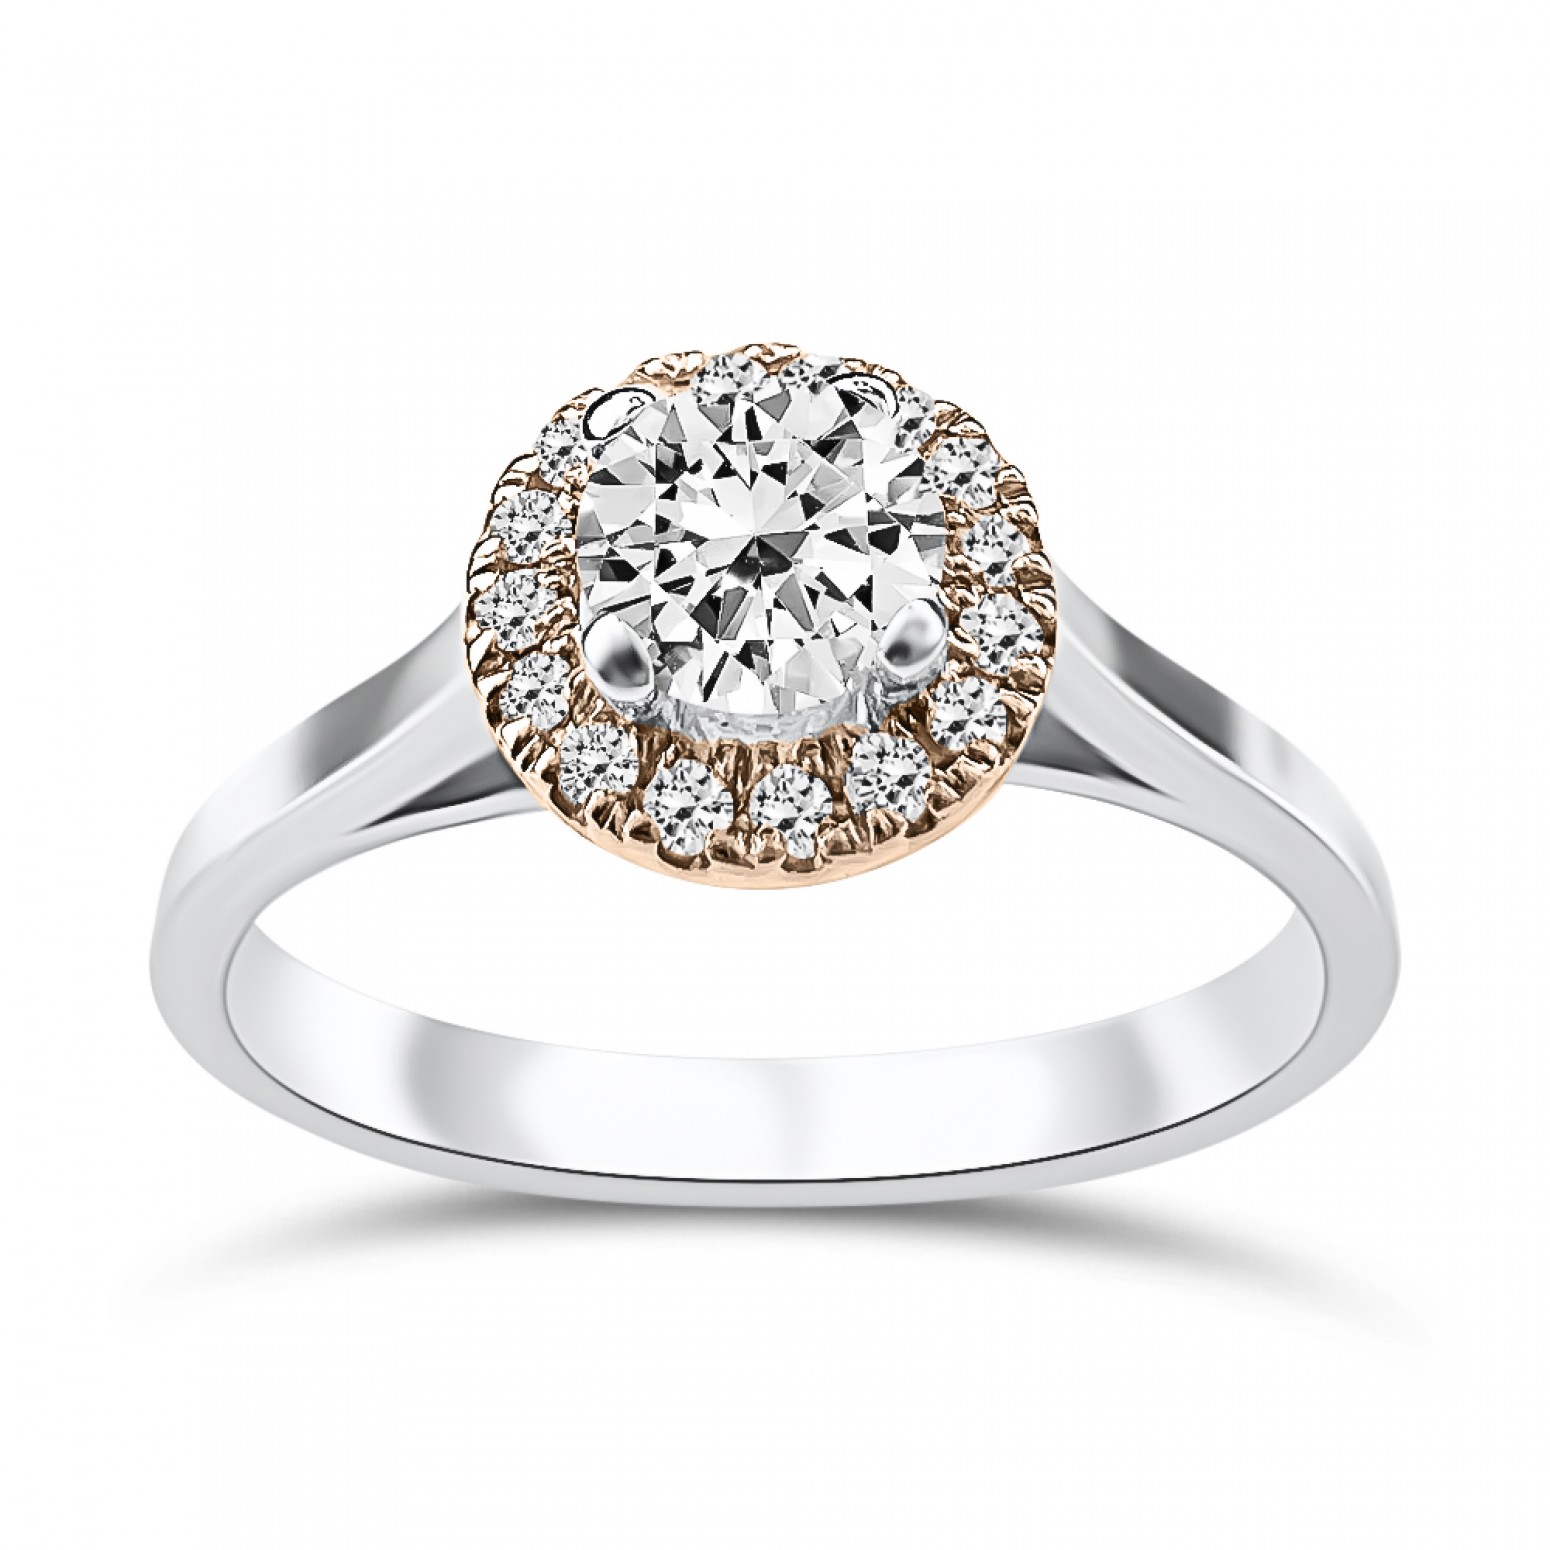 Μονόπετρο δαχτυλίδι Κ18 λευκόχρυσο & ροζ με κεντρικό διαμάντι 0.25ct, VVS2, E από το IGL da3981 ΔΑΧΤΥΛΙΔΙΑ ΑΡΡΑΒΩΝΑ Κοσμηματα - chrilia.gr